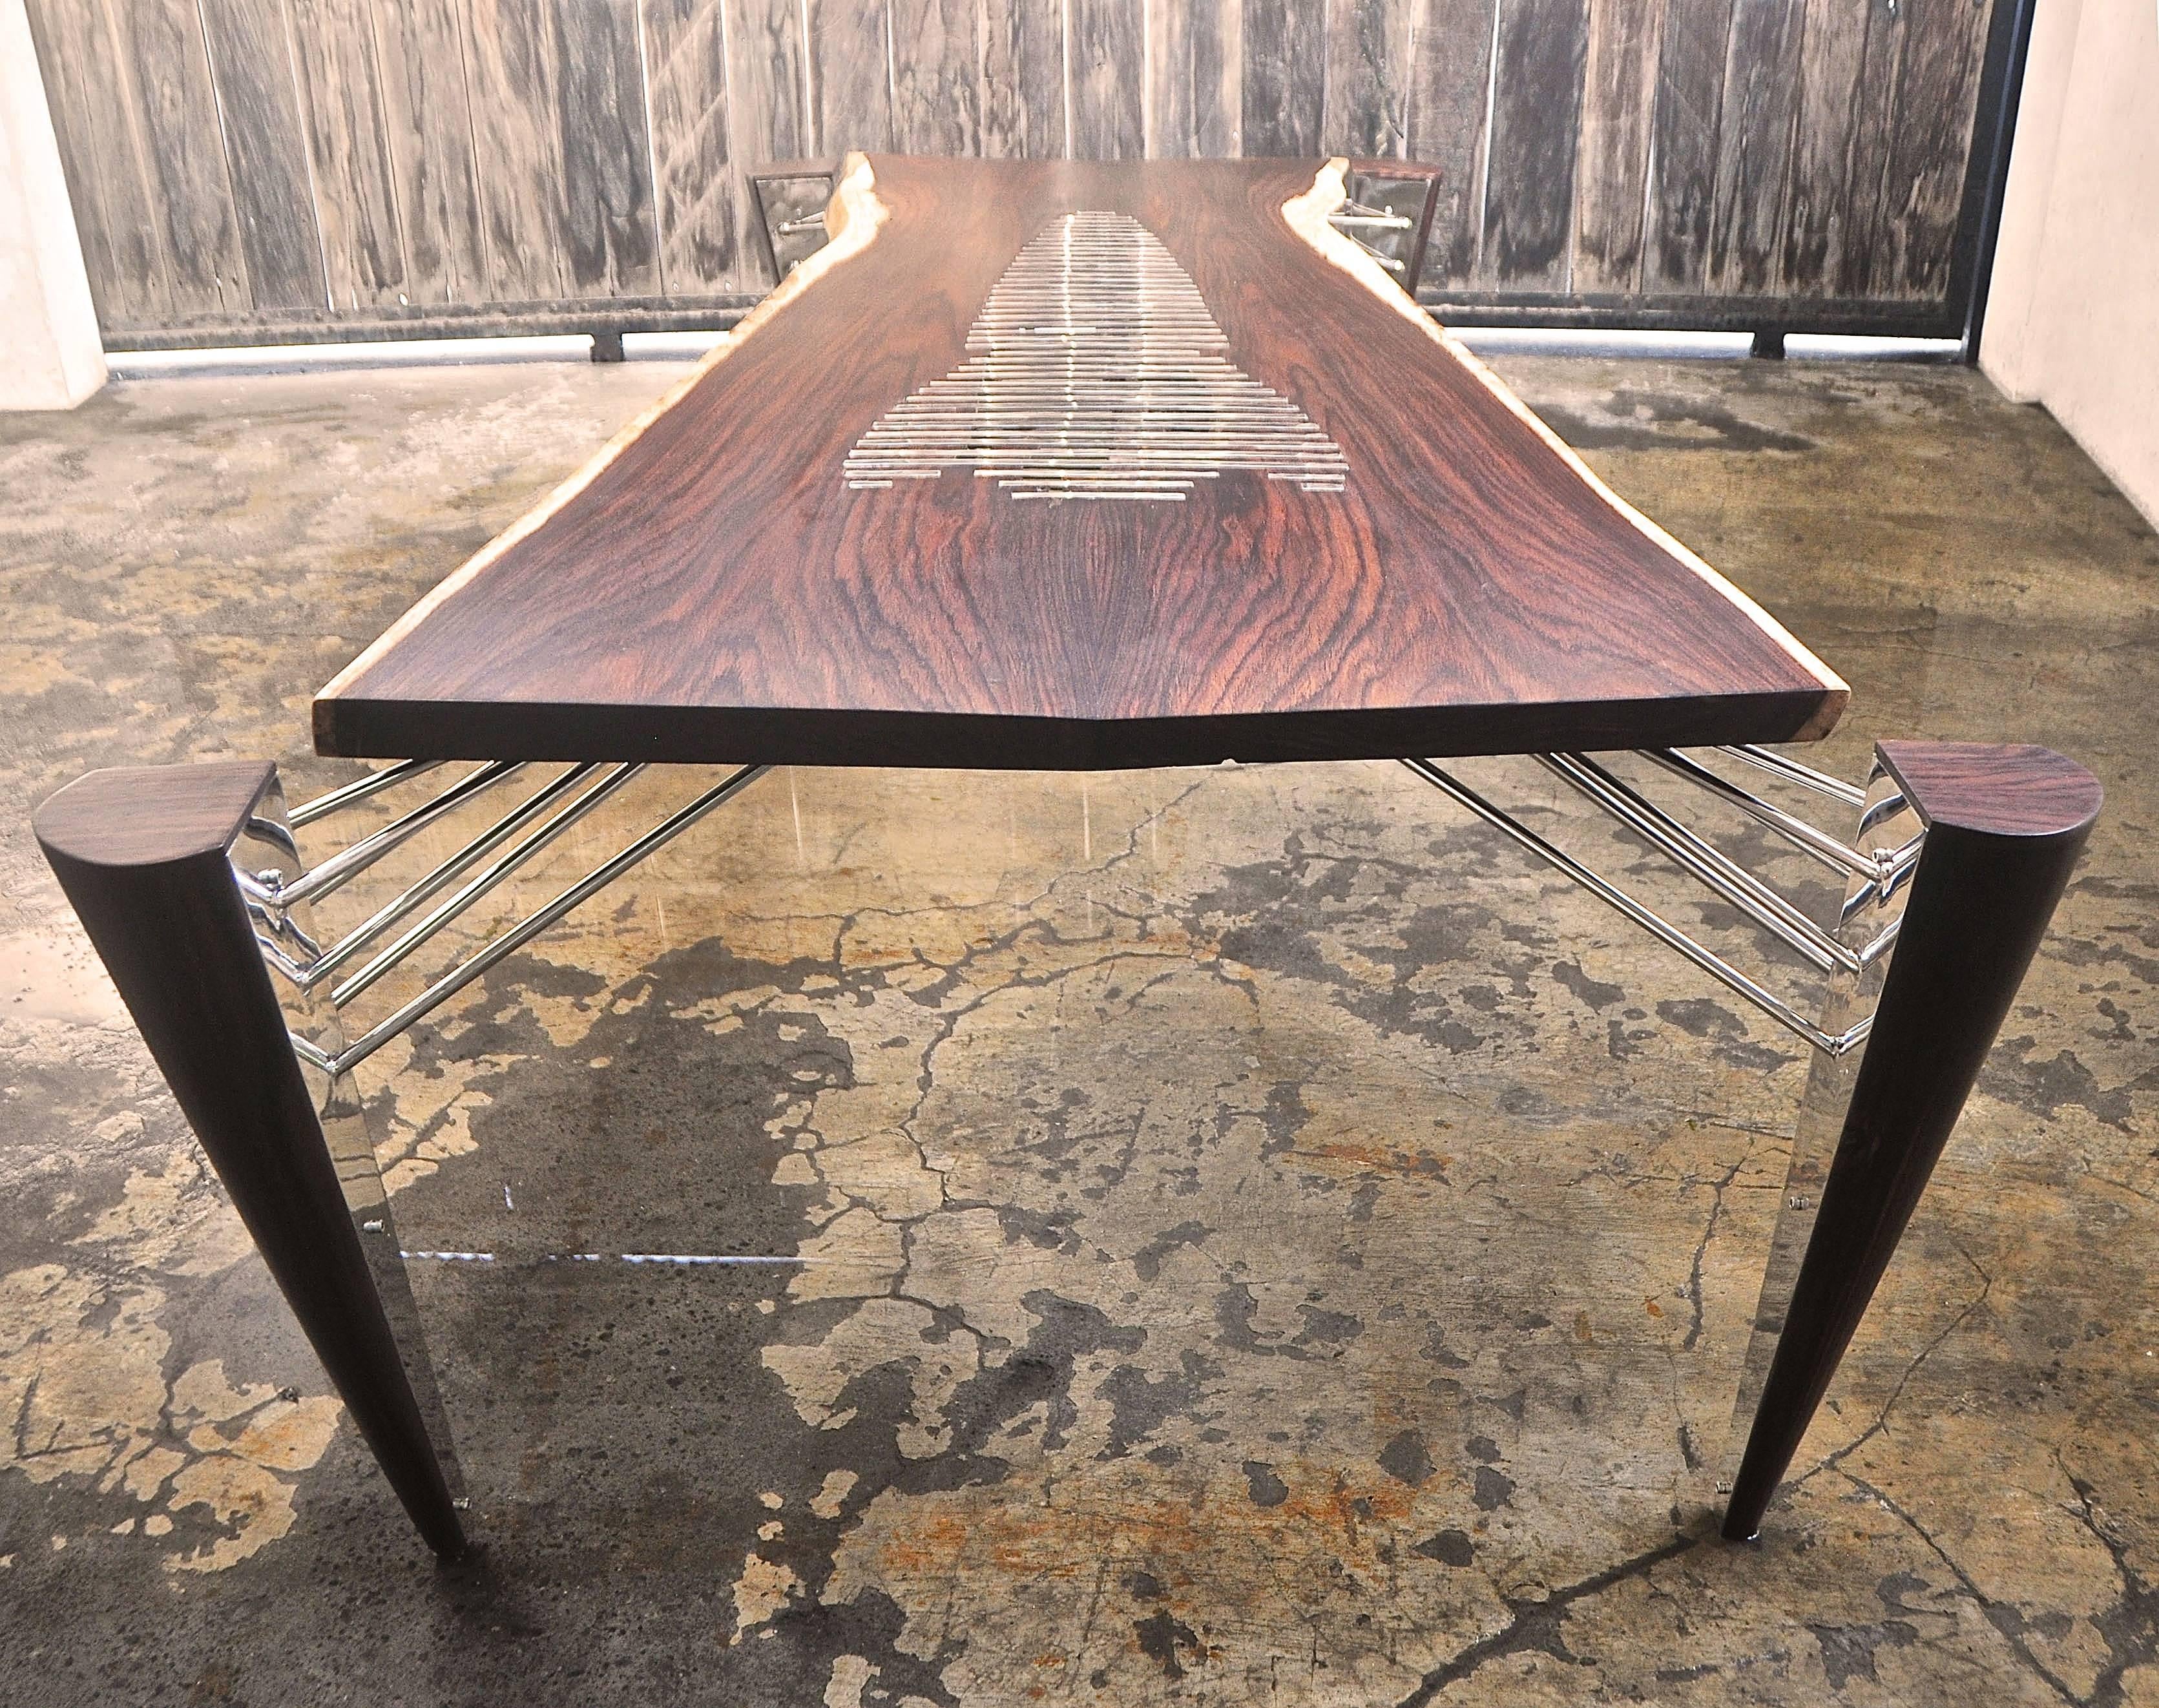 Hand-Crafted Rocket Table, Stamped: R  2015  Signed: Helgen Design